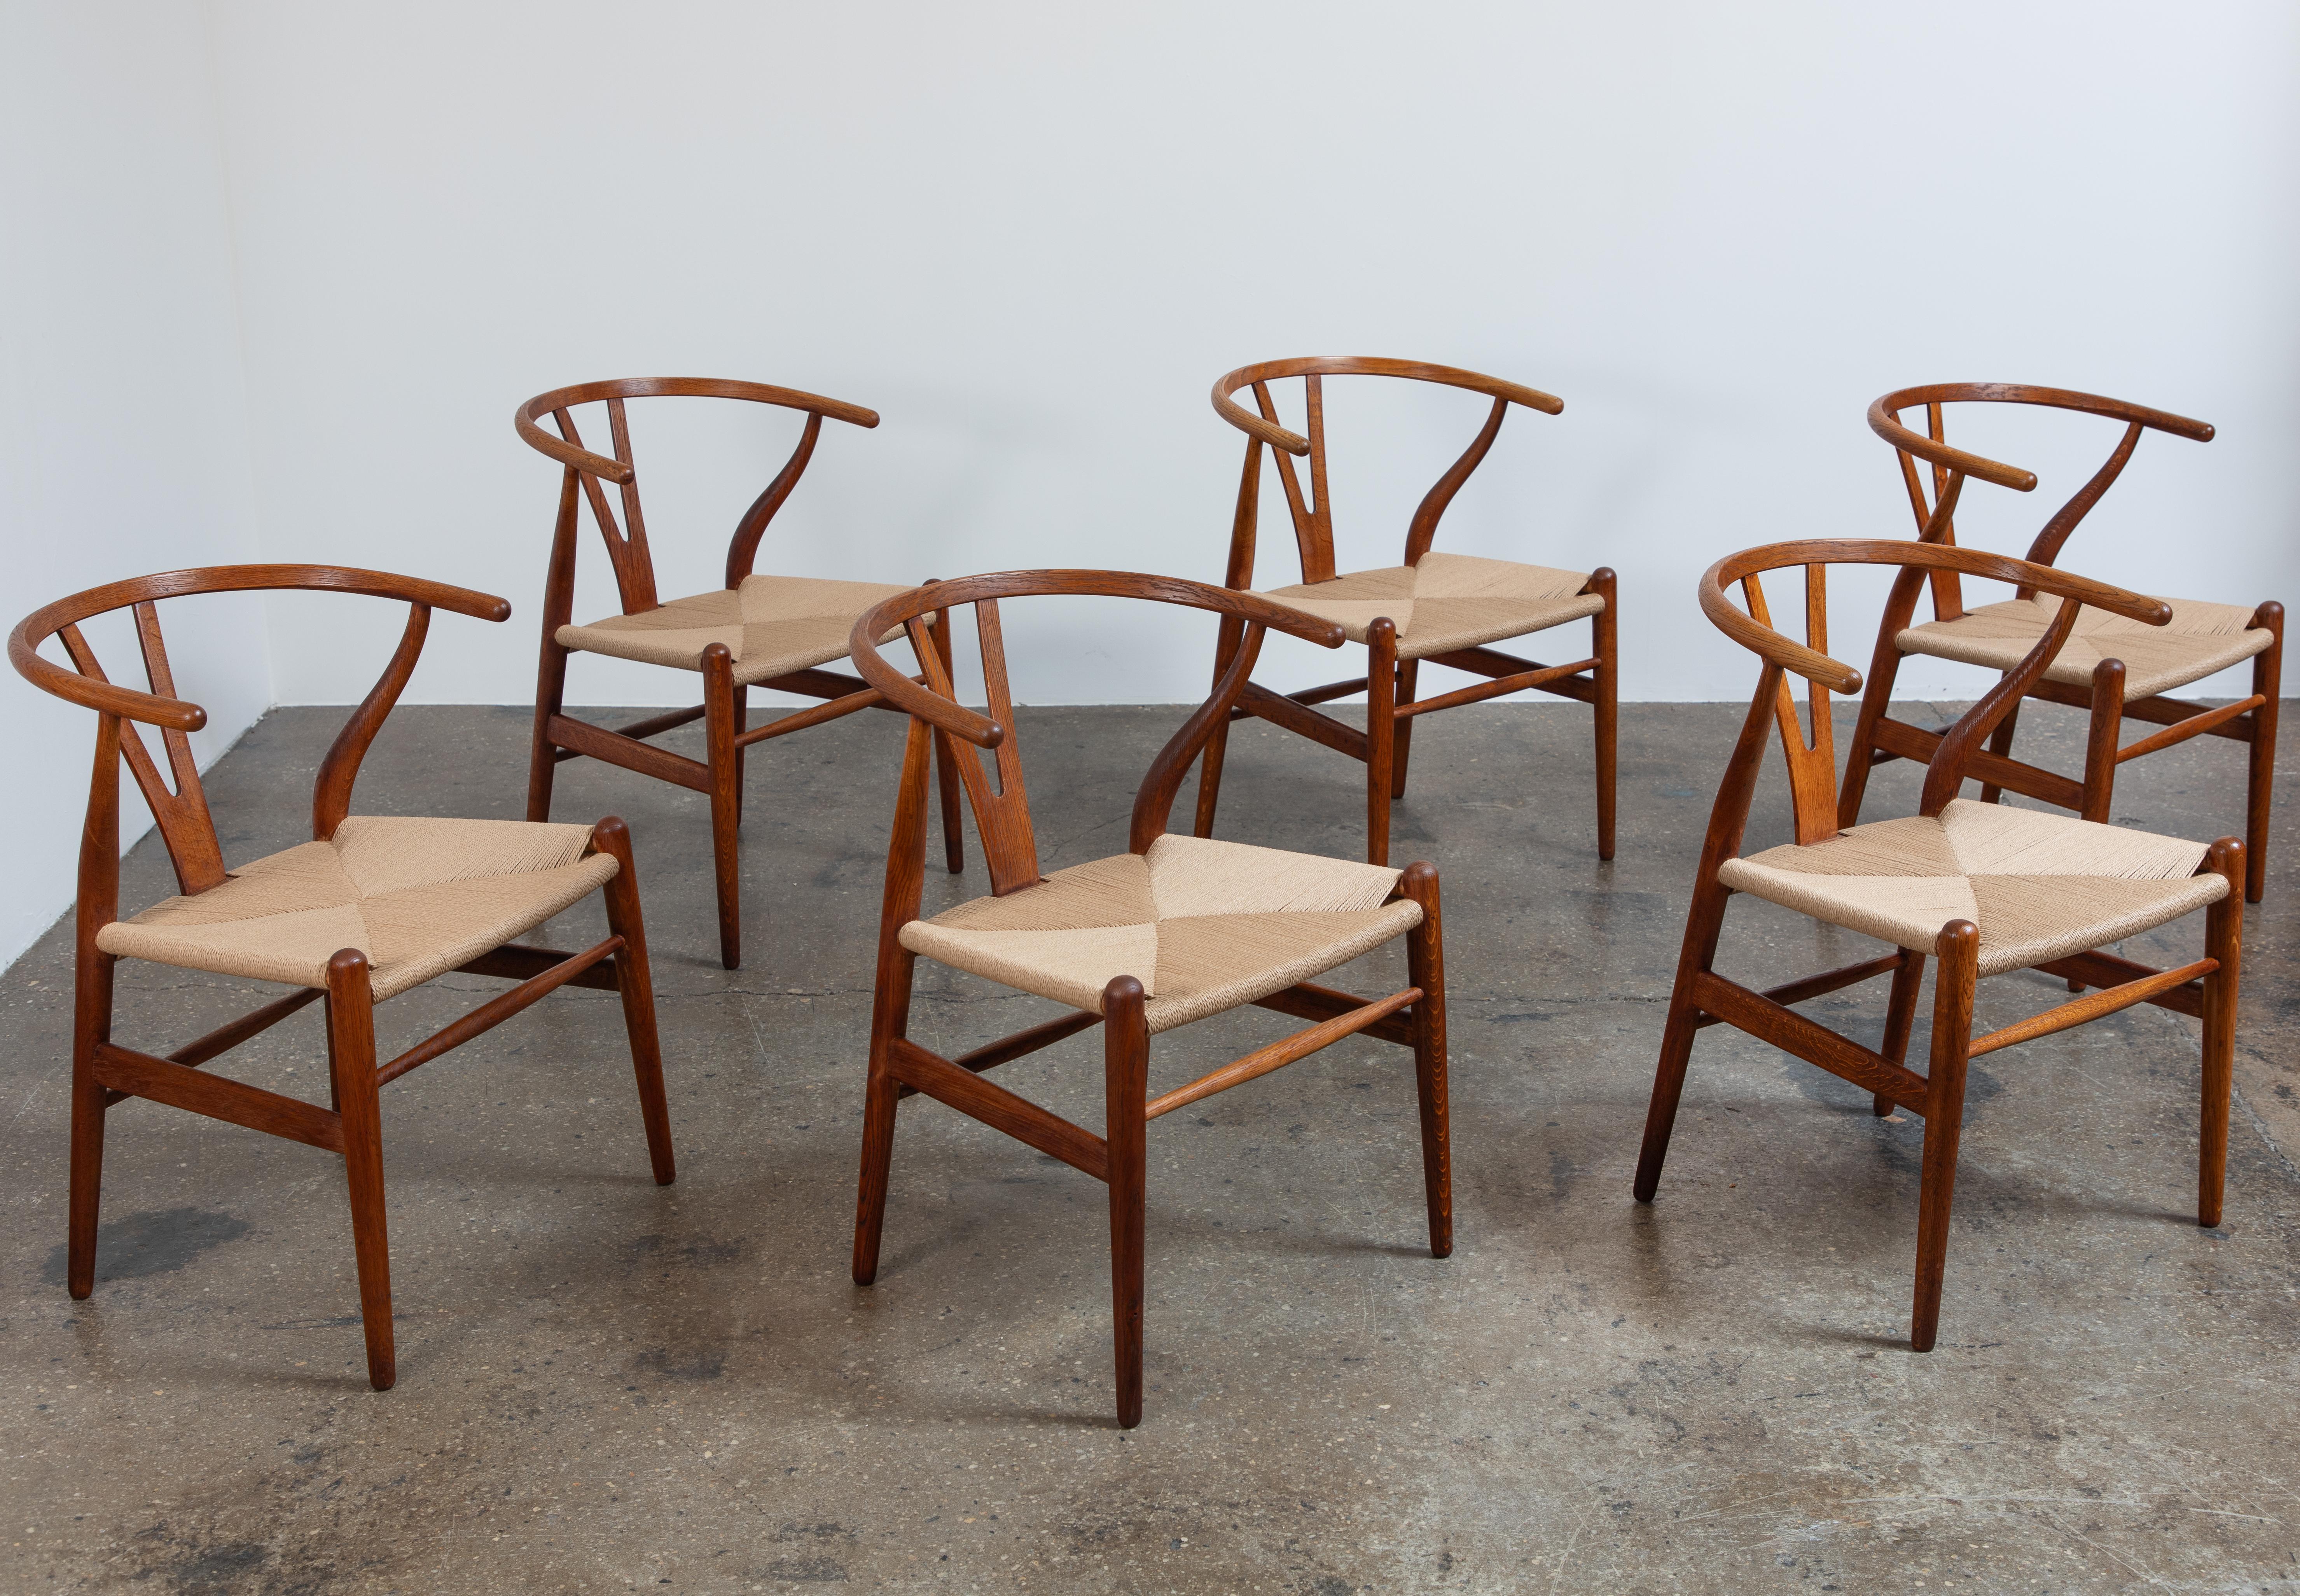 Satz von sechs Esszimmerstühlen Modell CH-24, entworfen von Hans J. Wegner für Carl Hansen & Son. Diese kultigen Esszimmerstühle vereinen gewachsene Eleganz mit feinem Handwerk.  Das Gestell aus robustem Eichenholz ist schön gealtert, die Y-förmige